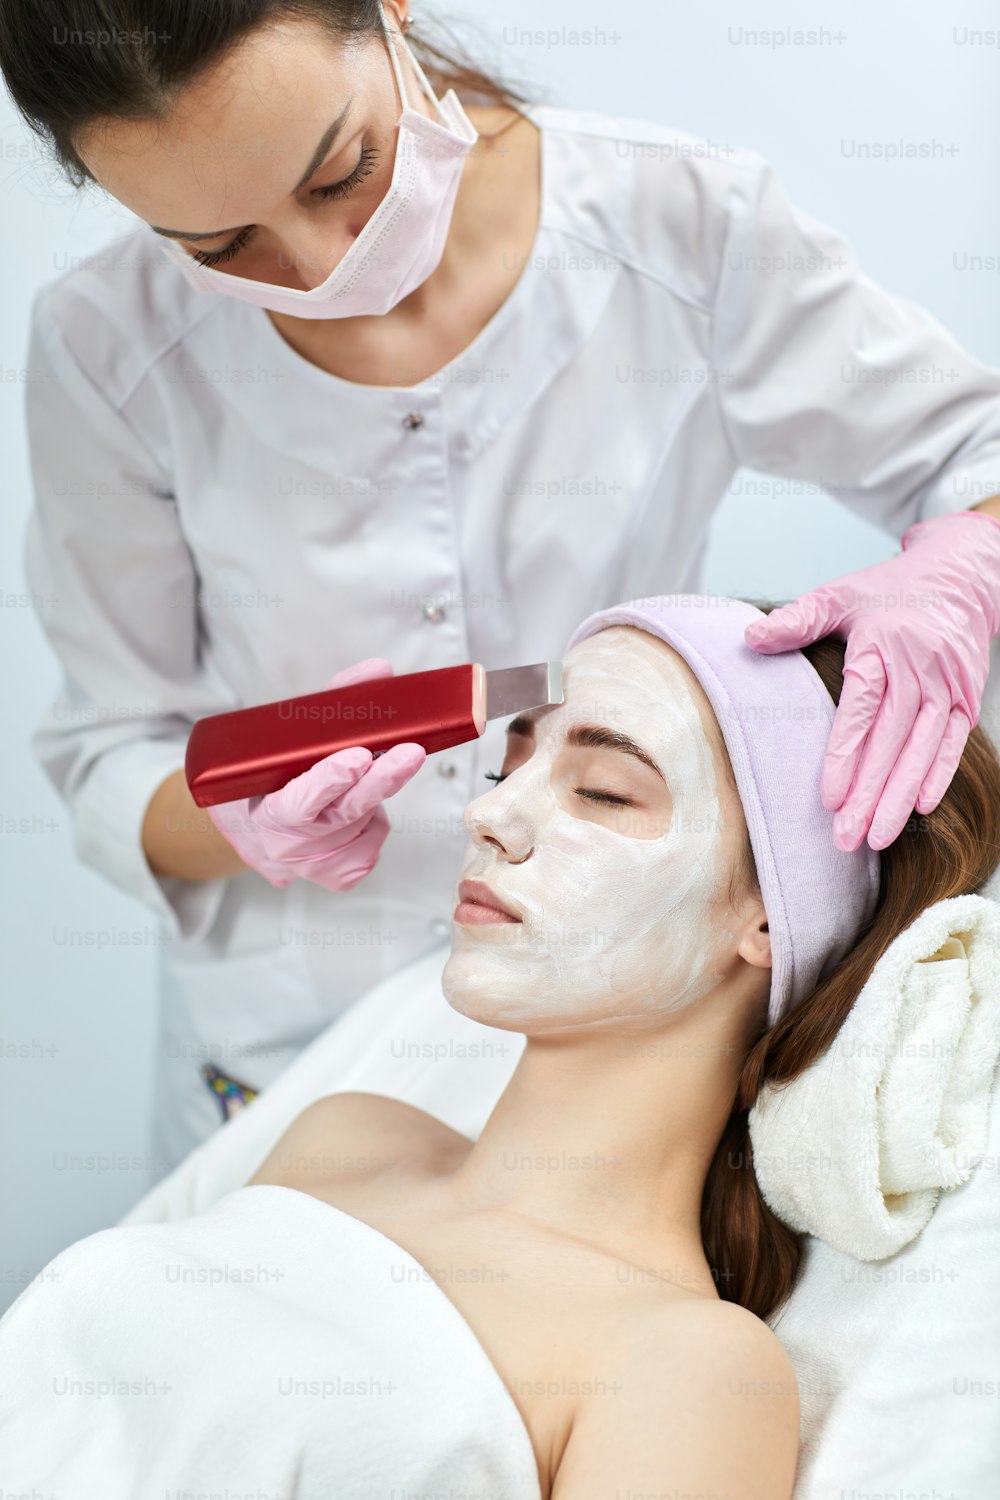 esteticista faz procedimento de limpeza de ultrassom do rosto da mulher, peeling facial. tratamento ultra-sônico para rejuvenescimento da pele